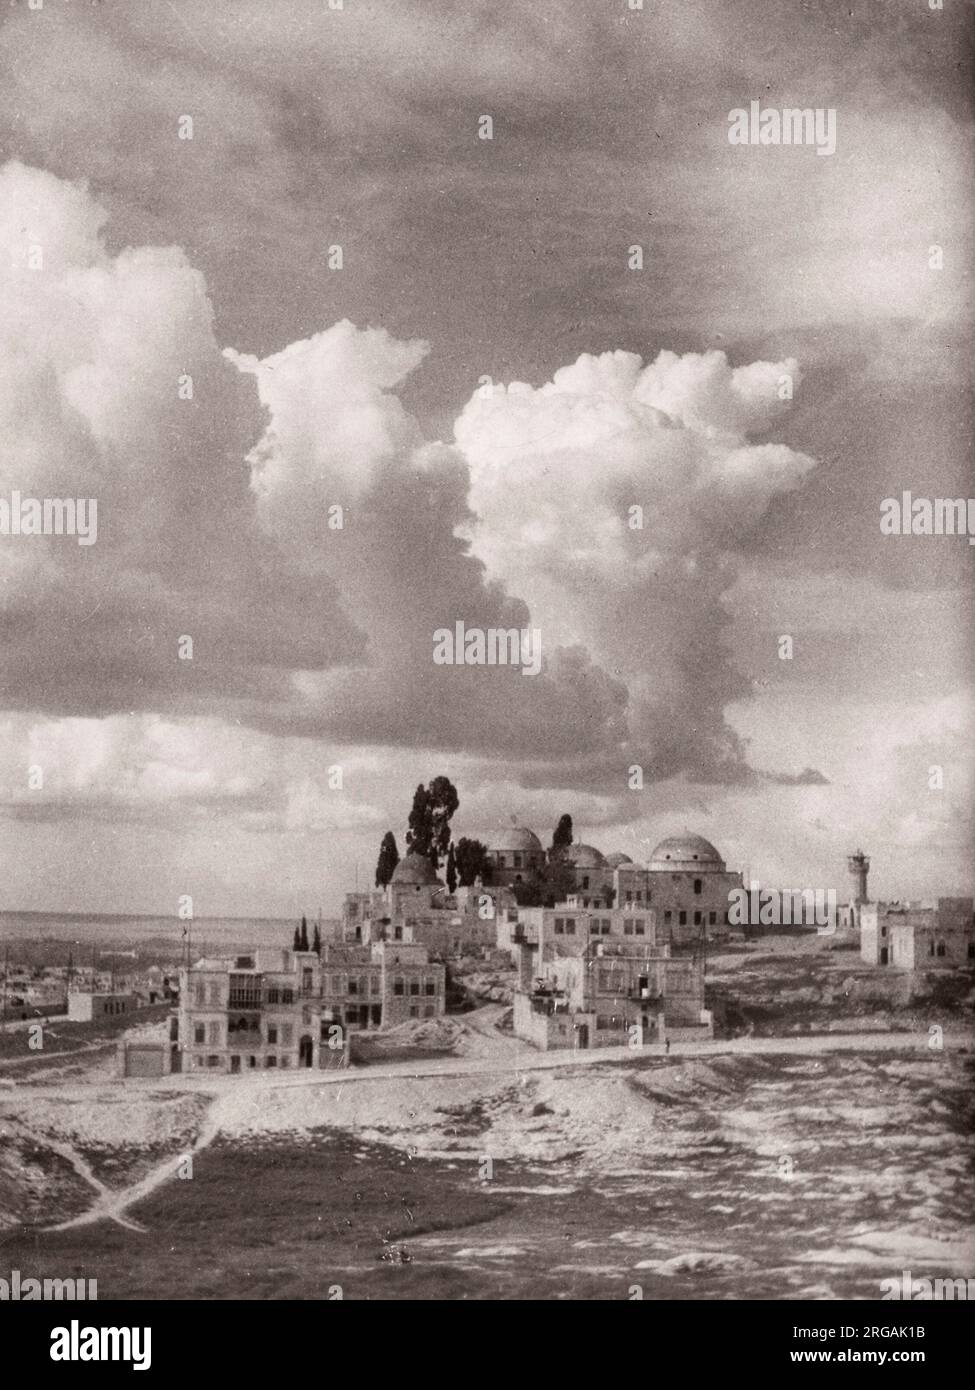 1943 Moyen-Orient Syrie - scène à Alep - vue de la ville Photographie d'un officier de recrutement de l'armée britannique stationné en Afrique de l'est et au Moyen-Orient pendant la Seconde Guerre mondiale Banque D'Images